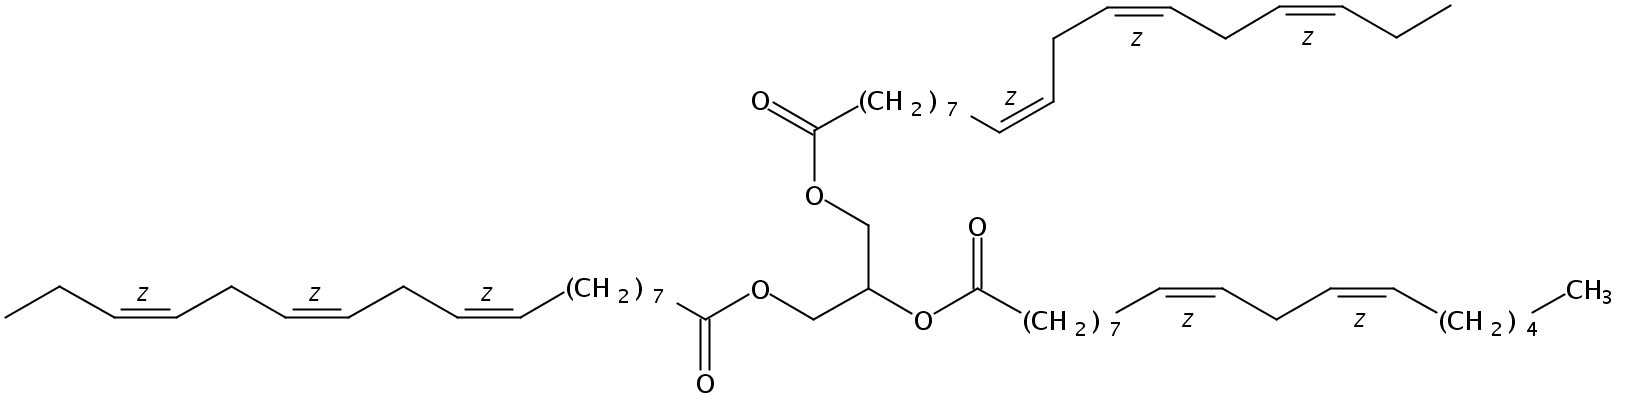 Structural formula of 1,3-Linolenin-2-Linolein